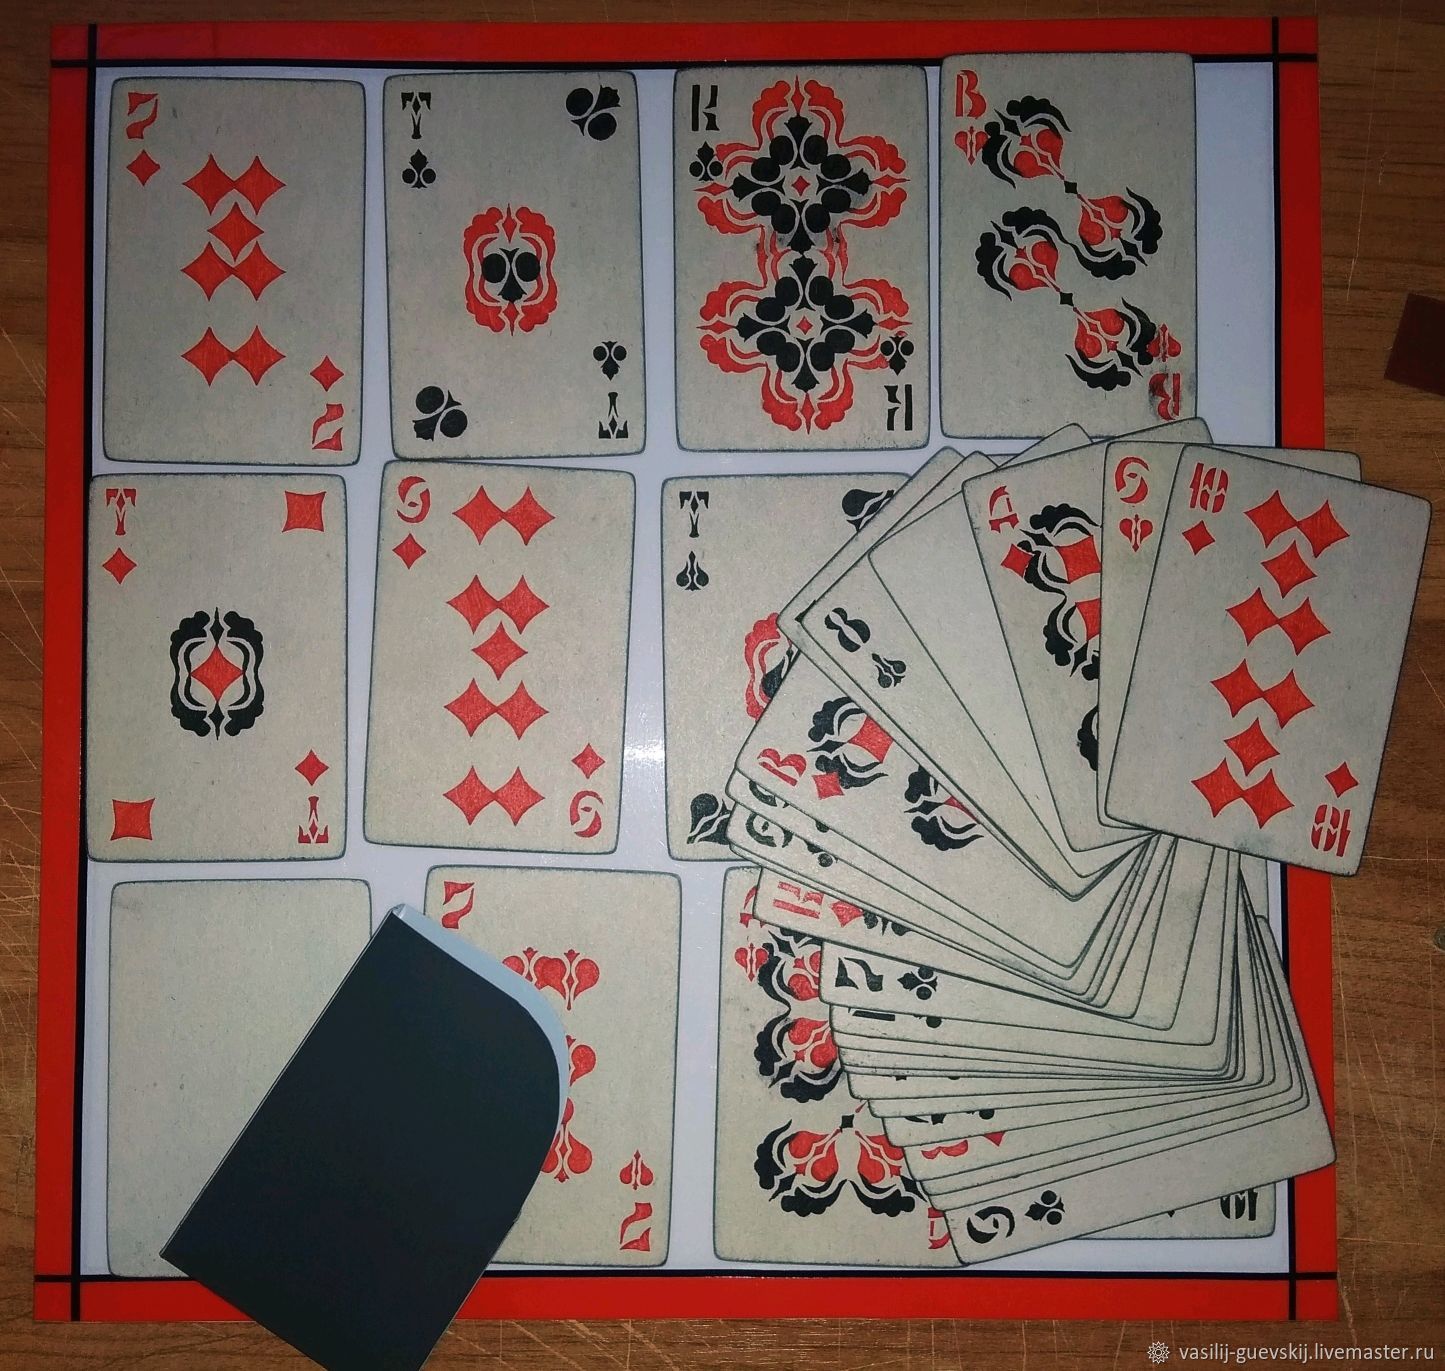 Правила игры в карты 54 карты. Румба карточная игра. Игральные карты классика азарта 54 карты. Игровые карточки. Самые интересные карточные игры для детей.